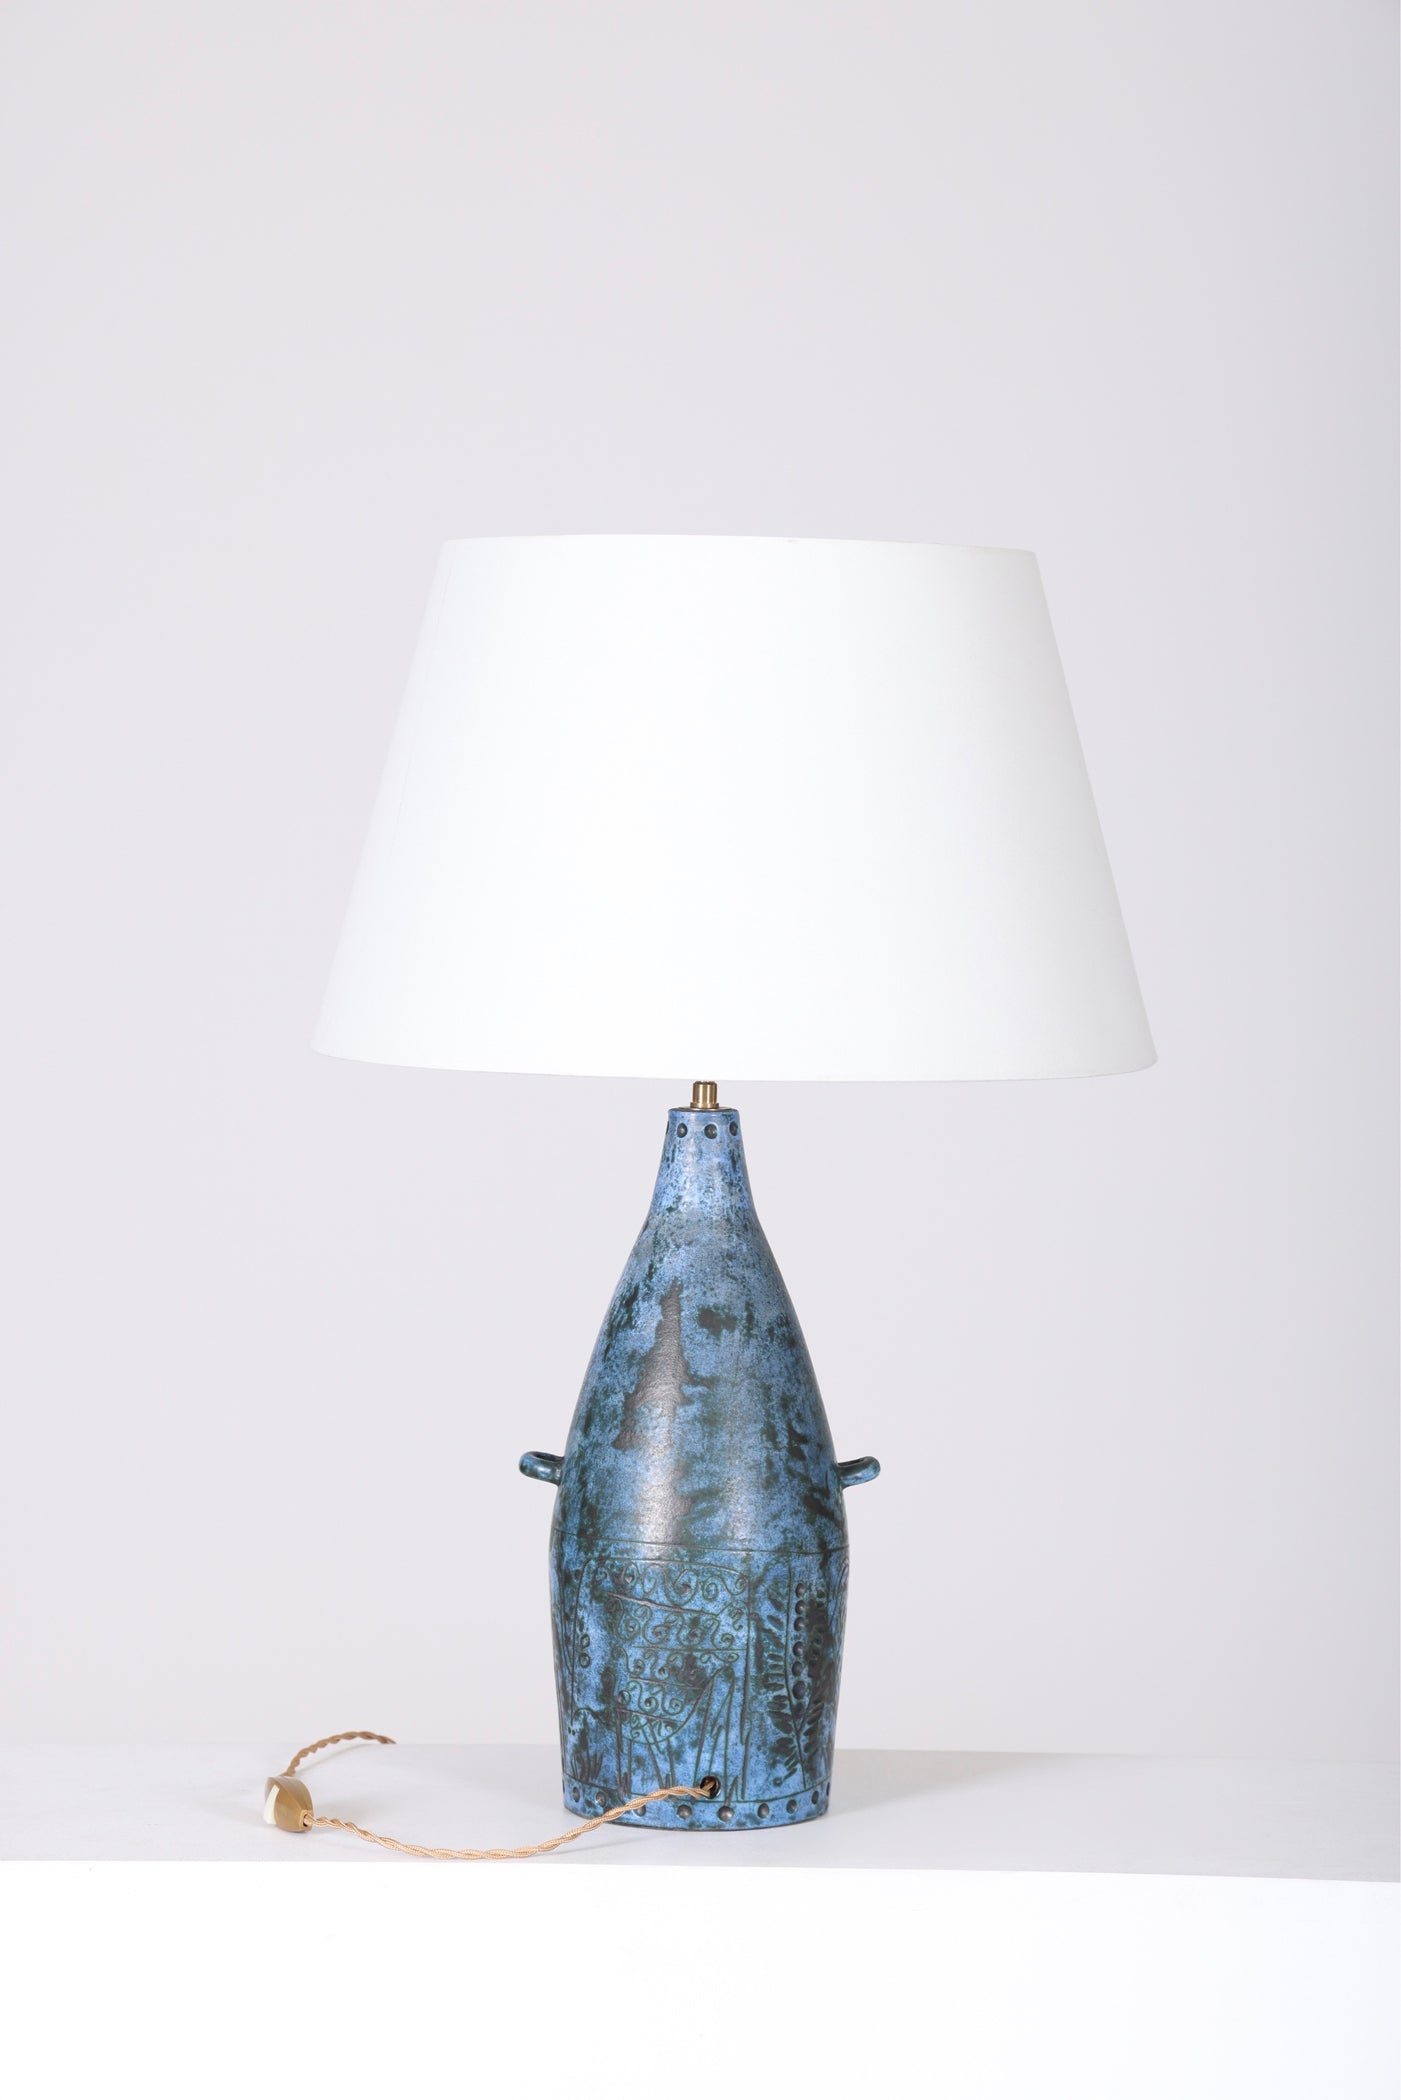 Lampe conçue par le céramiste français Jacques Blin bleue signée sur l'envers, années 1950. Vendue sans abat-jour. En parfait état.